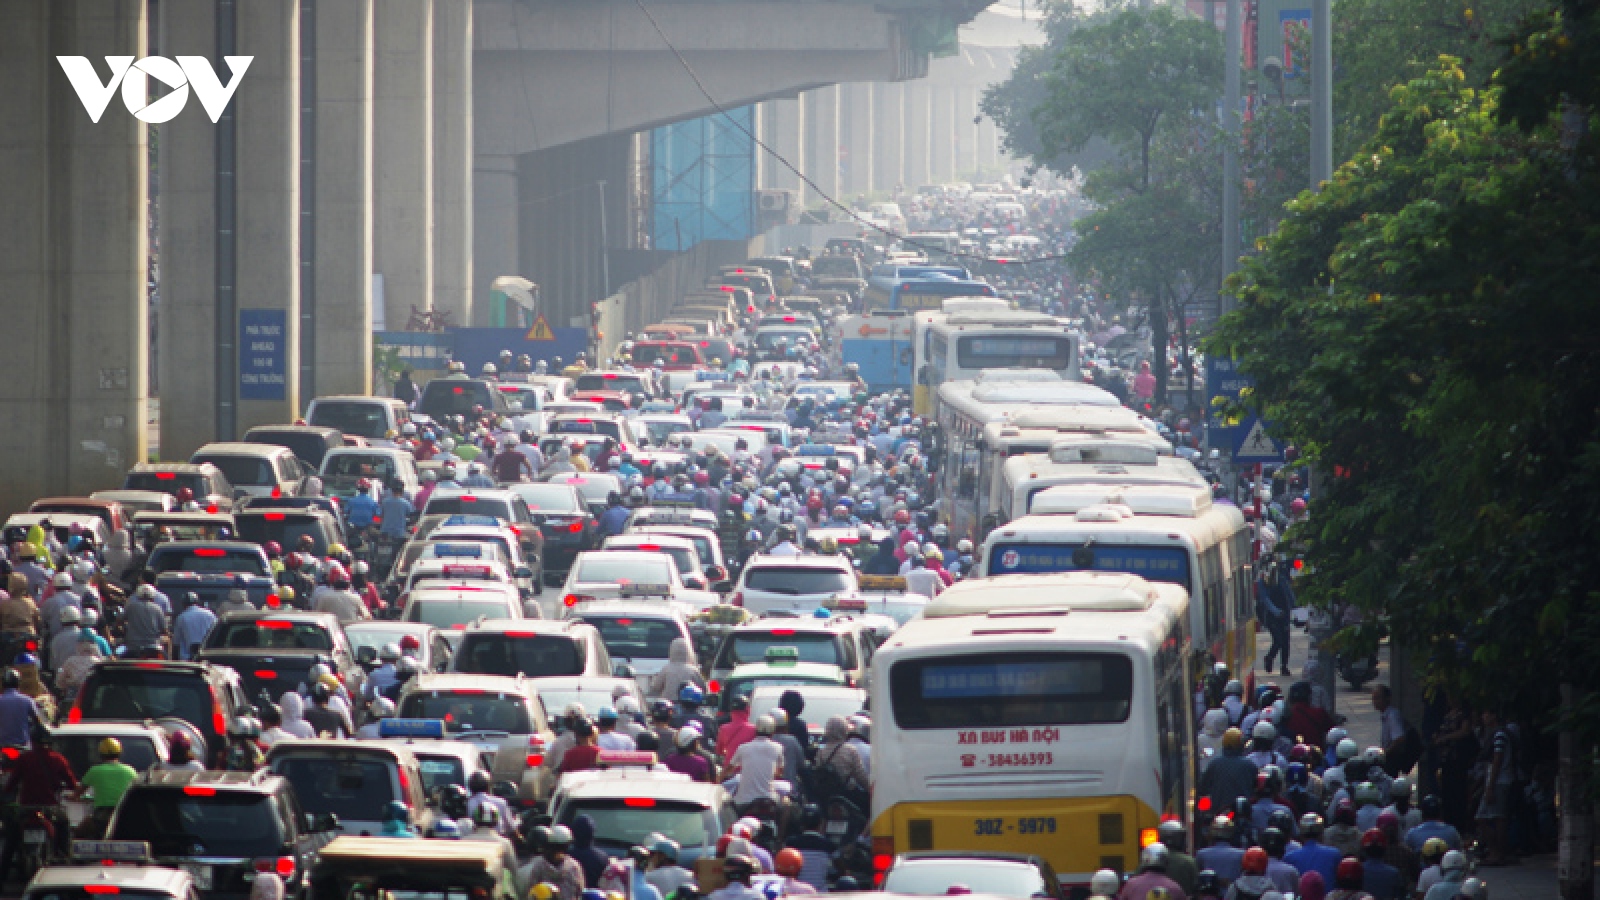 “Hà Nội cần hạ tầng giao thông hoàn thiện hơn là cần 100 trạm thu phí”